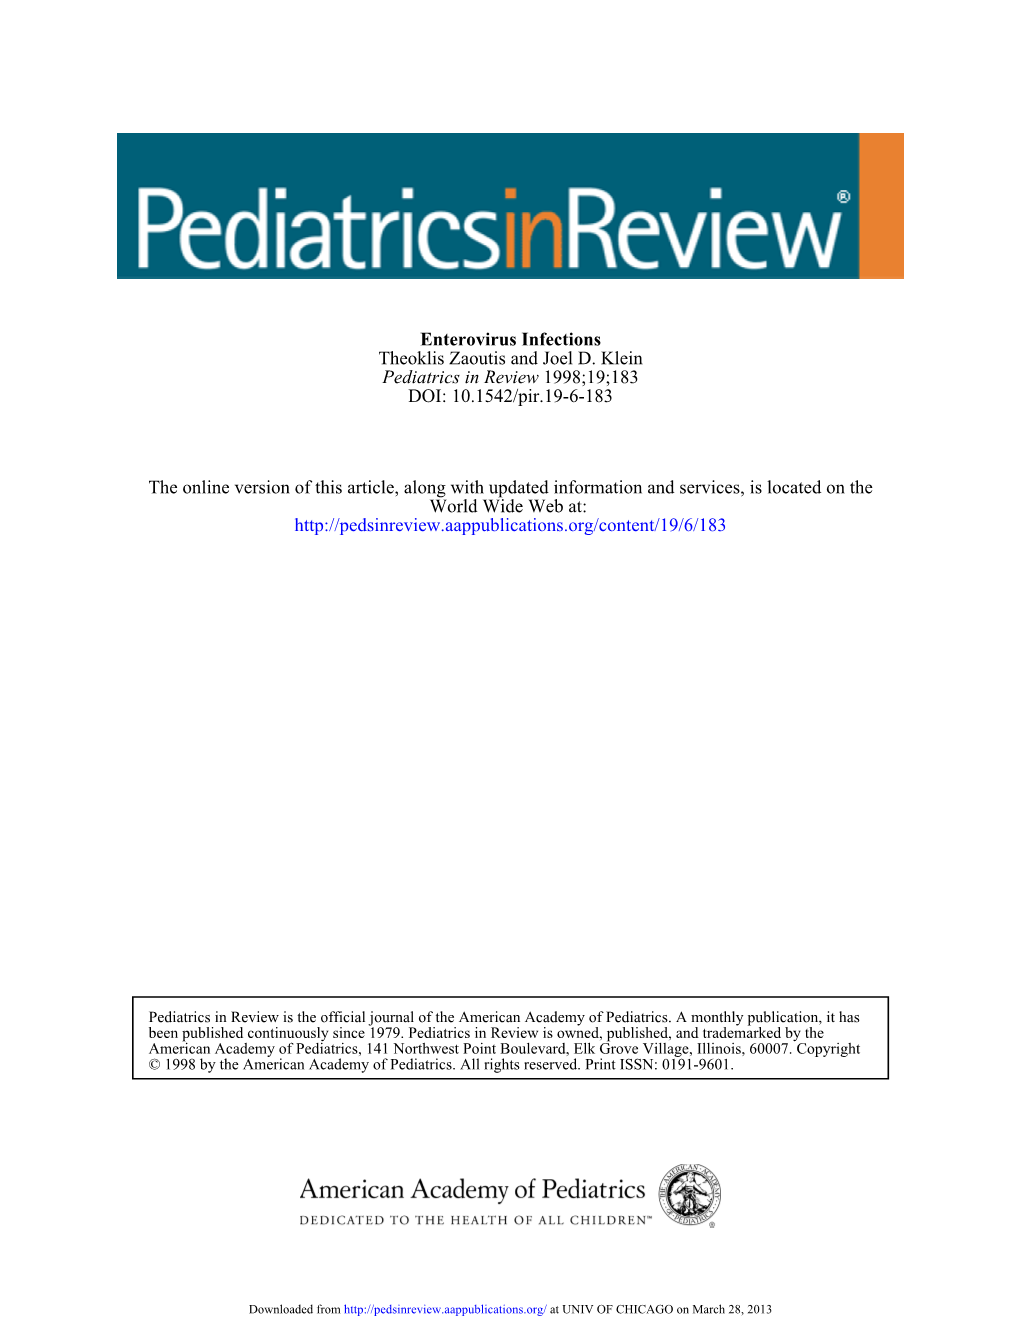 DOI: 10.1542/Pir.19-6-183 1998;19;183 Pediatrics in Review Theoklis Zaoutis and Joel D. Klein Enterovirus Infections